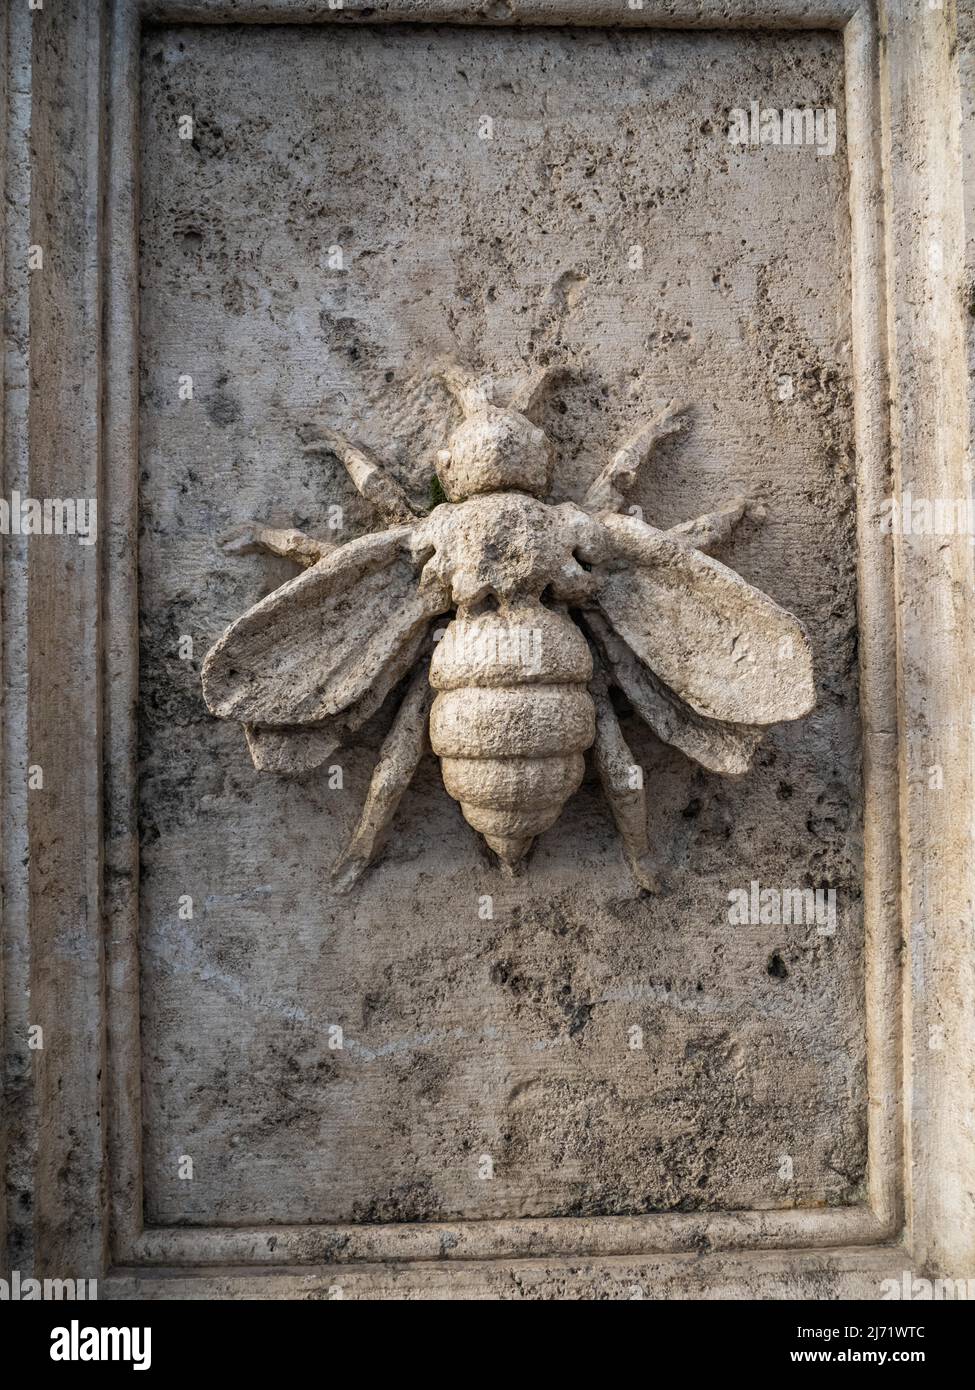 Biene als Wappentier, Steinskulptur, Petersdom, Vatikan, ROM, Italien Banque D'Images